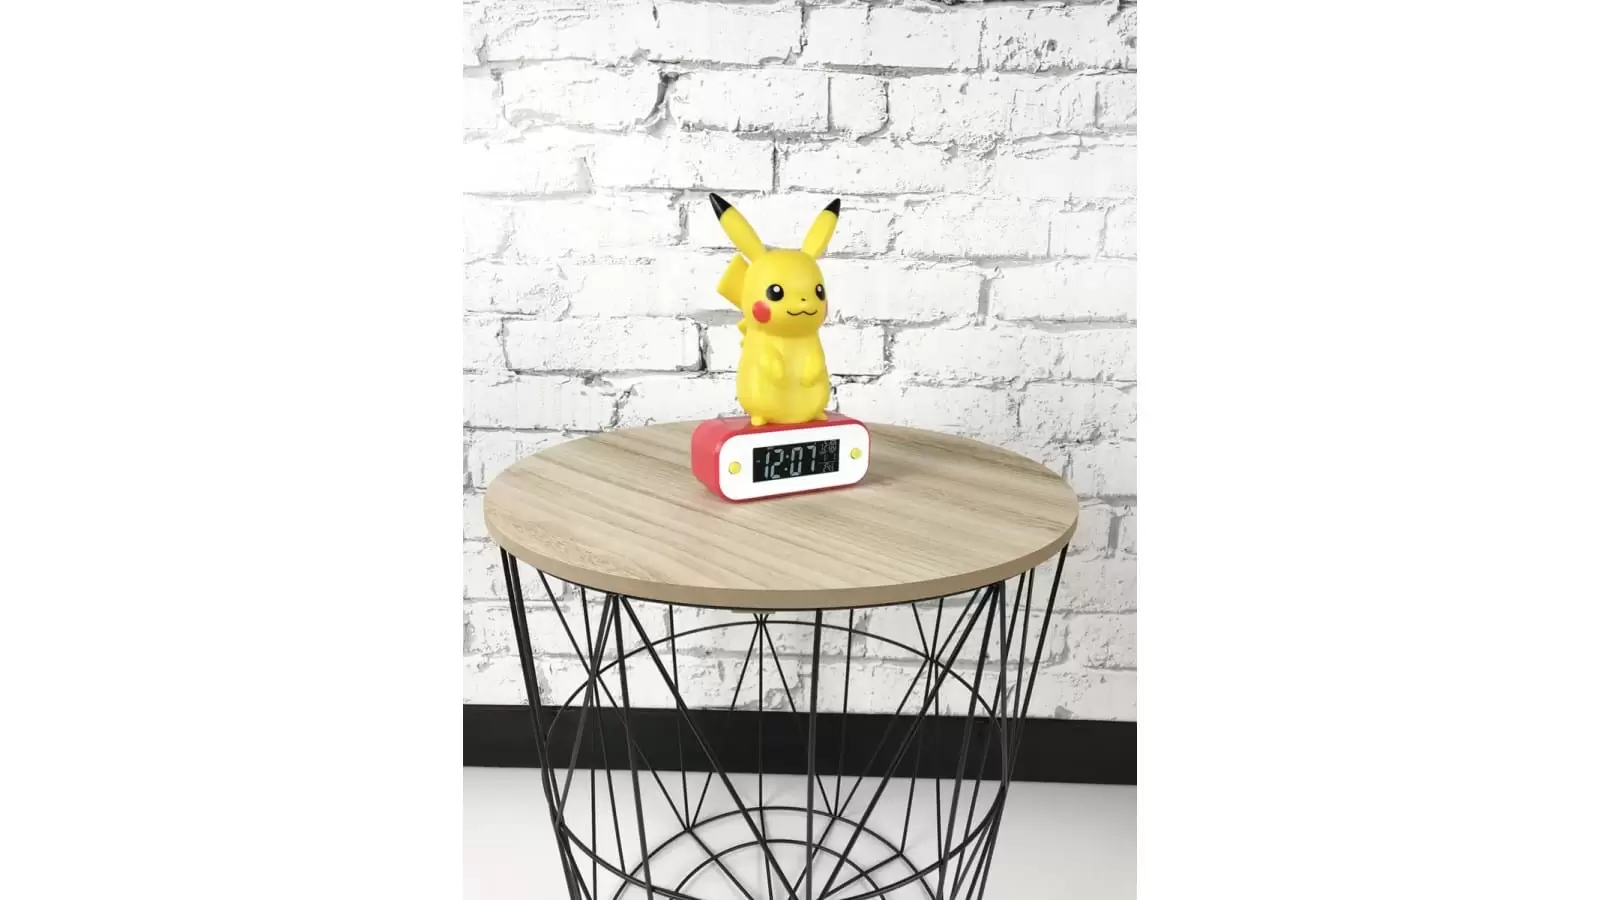 שעון אלקטרוני Nacon teknofun pikachu alarm clock with light תמונה 2